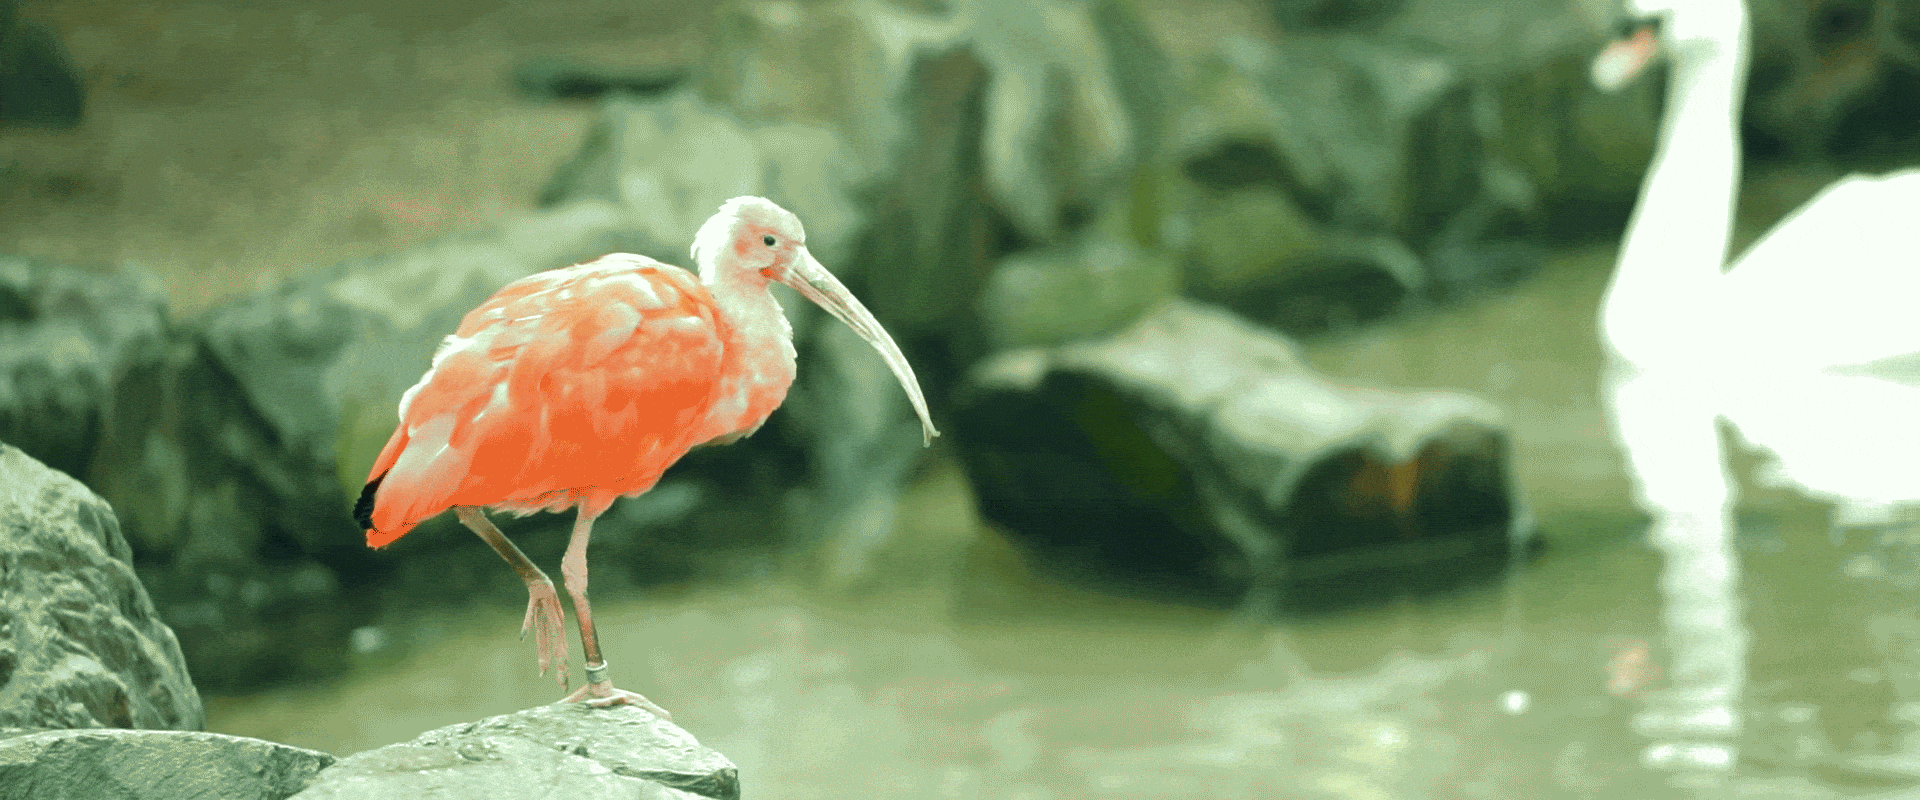 Scarlet ibis in Vogel Park, Ogaki-cho, Matsue, Shimane.